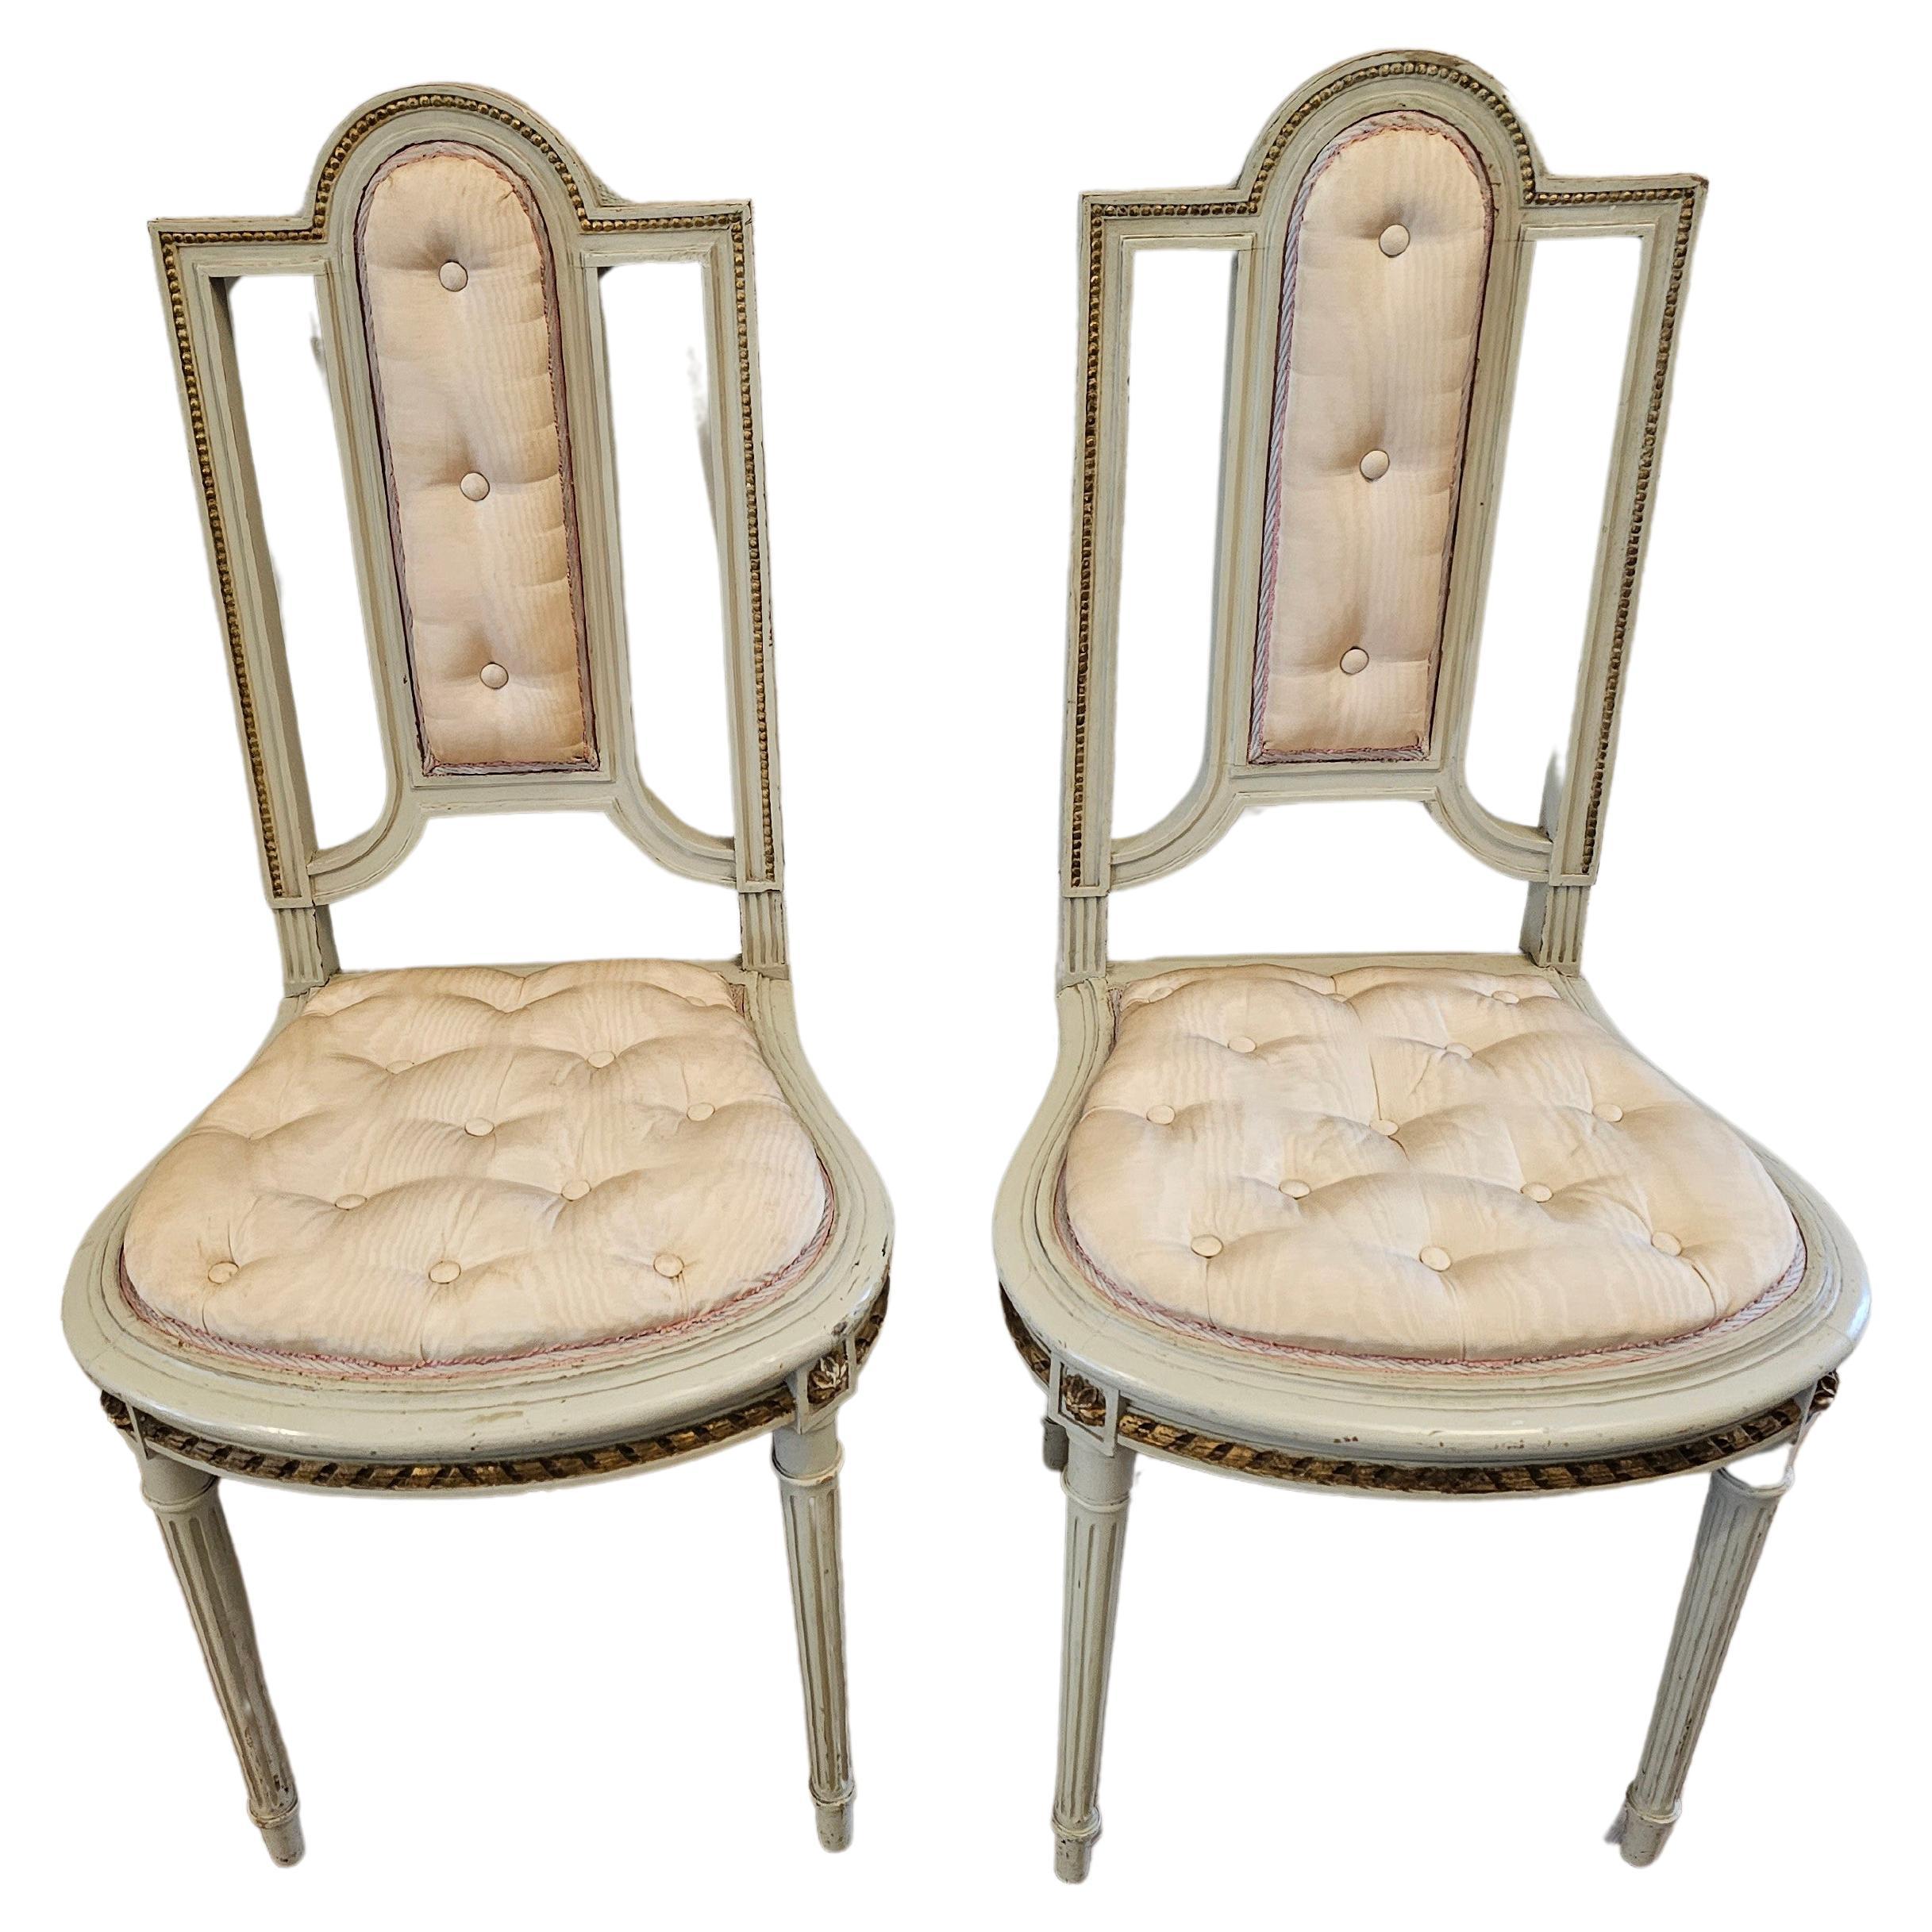 Paire de chaises anciennes françaises Louis XVI peintes et dorées à la feuille